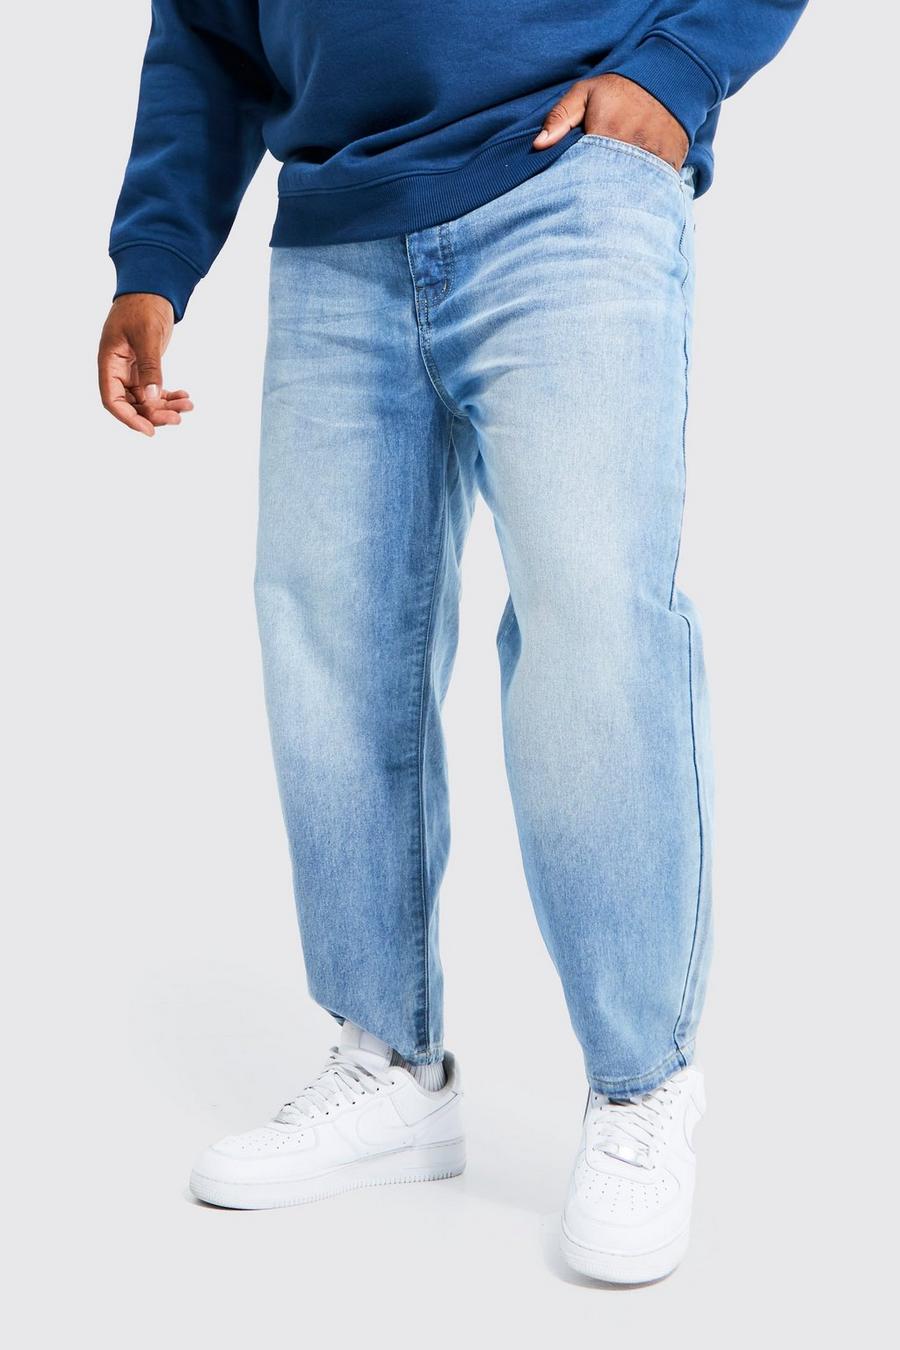 כחול ביניים ג'ינס קרופ קשיח בגזרת קרסול צרה, מידות גדולות